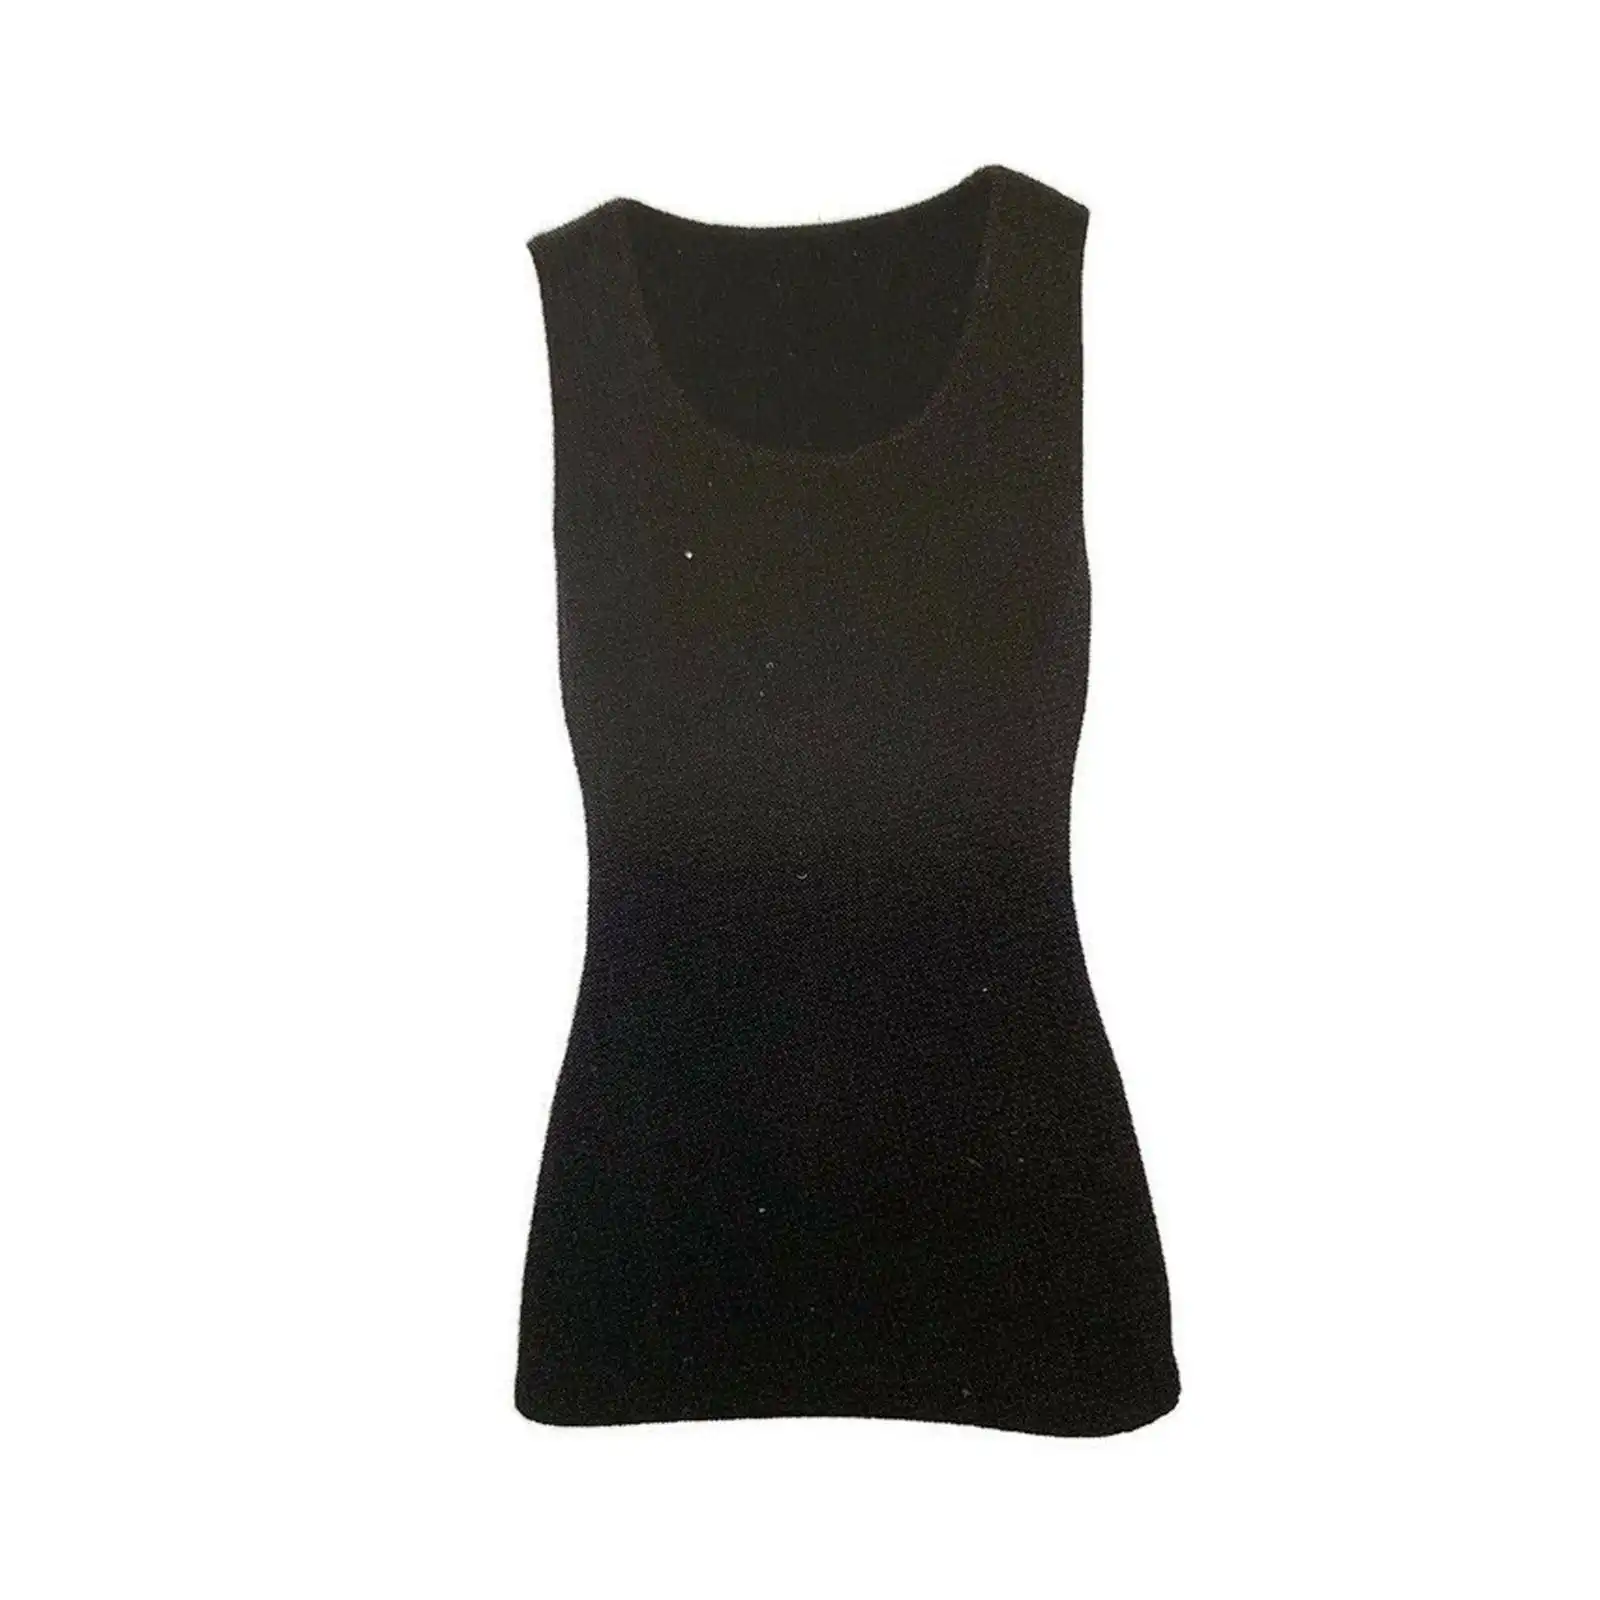 Merino Skins Ladies Scoop Neck Tank Top Sleeveless Wool Thermals - Black